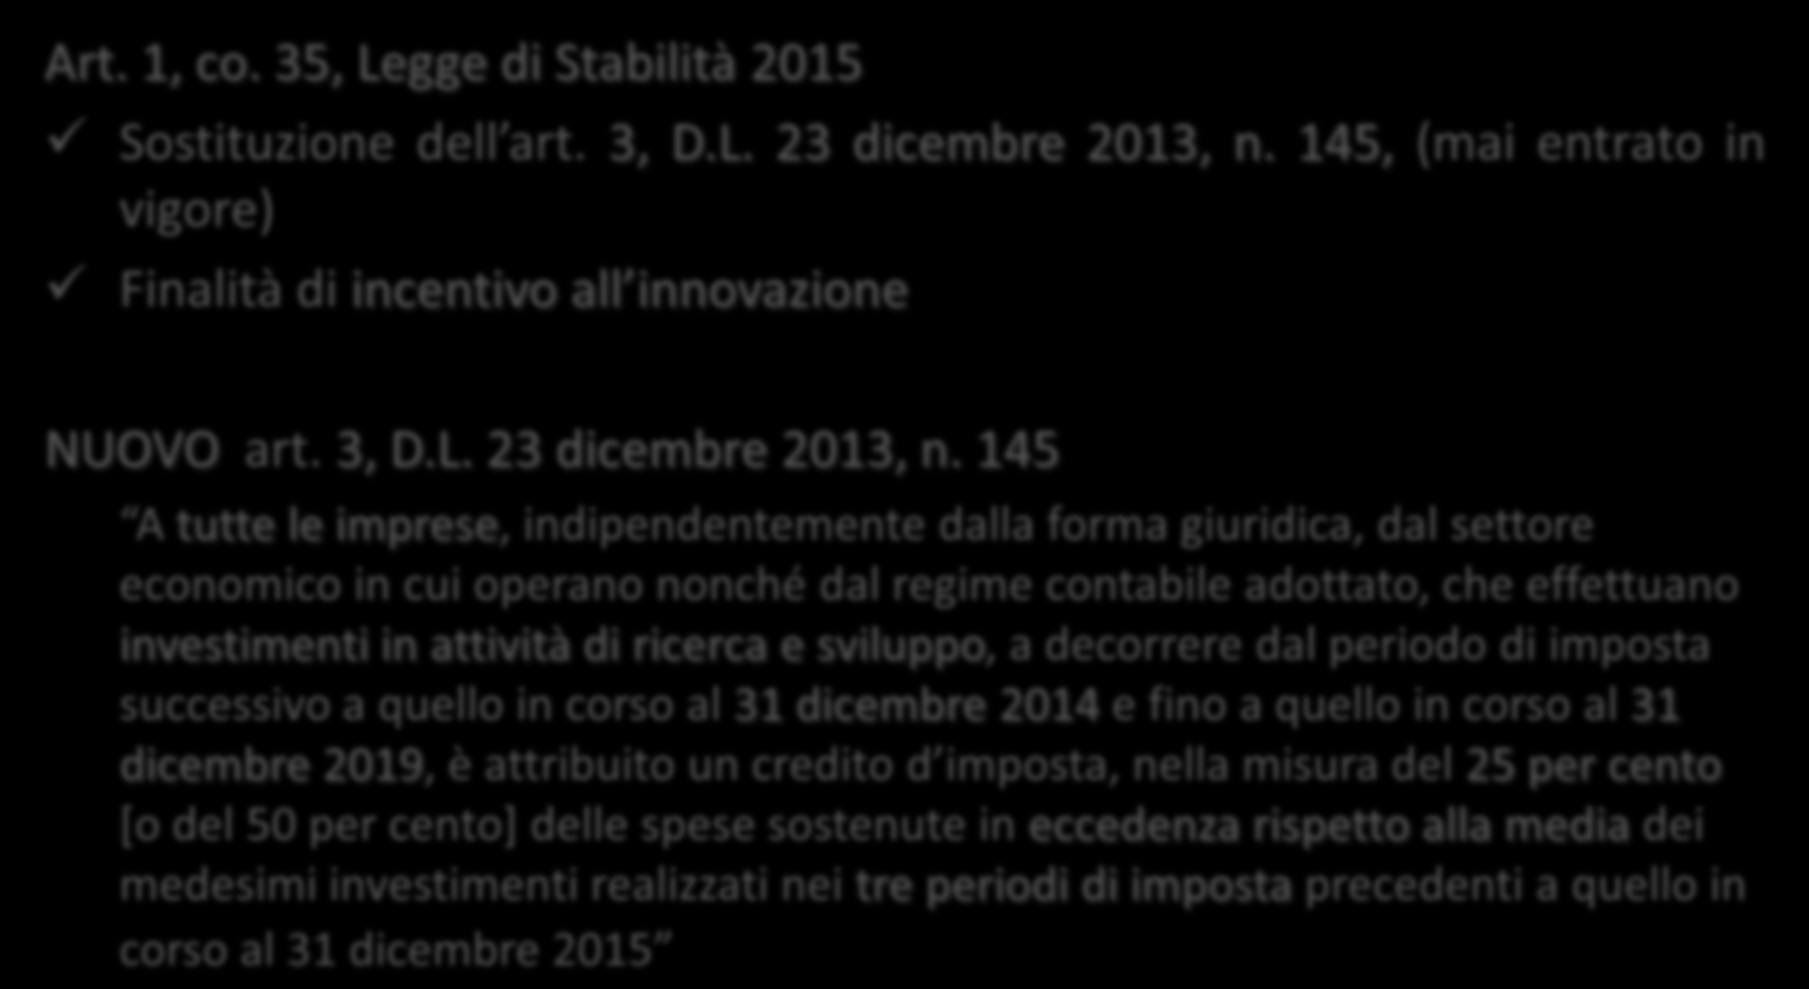 Credito di imposta R&S Art. 1, co. 35, Legge di Stabilità 2015 Sostituzione dell art. 3, D.L. 23 dicembre 2013, n.